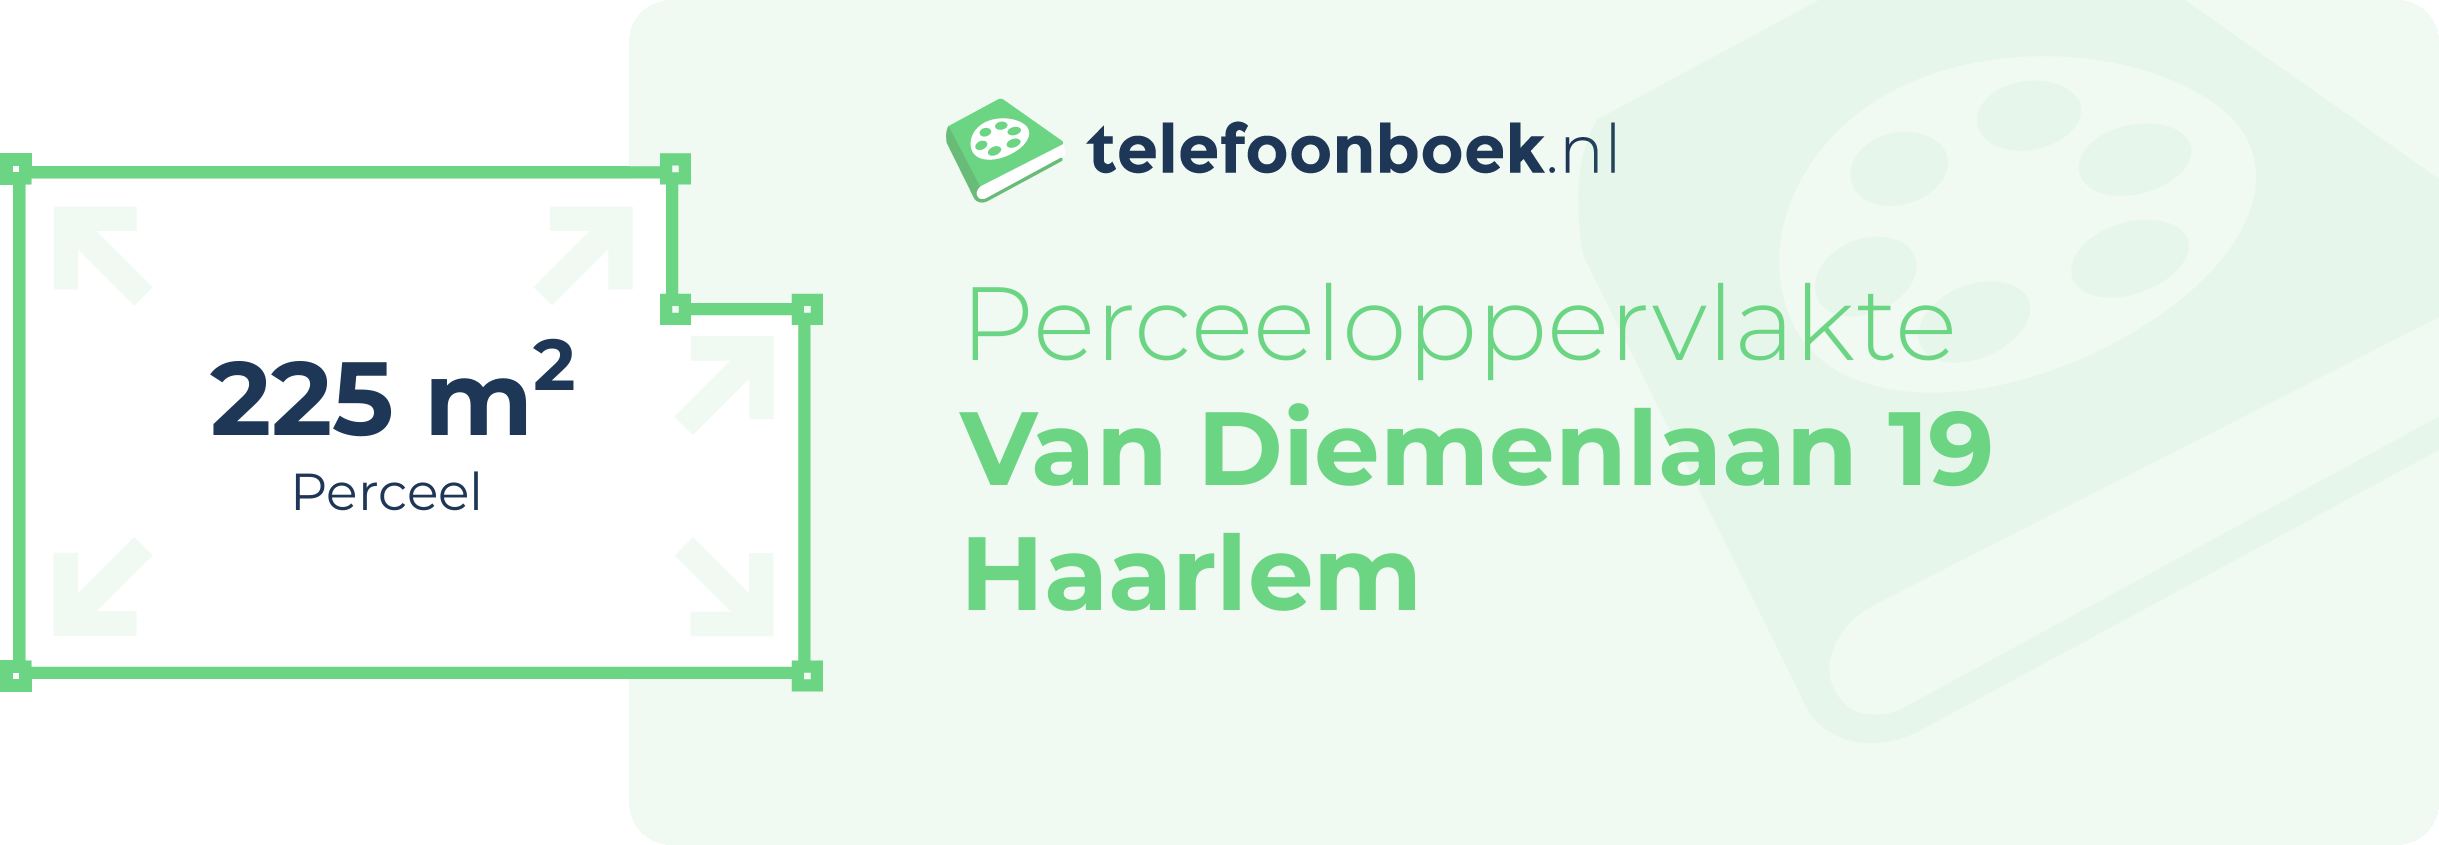 Perceeloppervlakte Van Diemenlaan 19 Haarlem